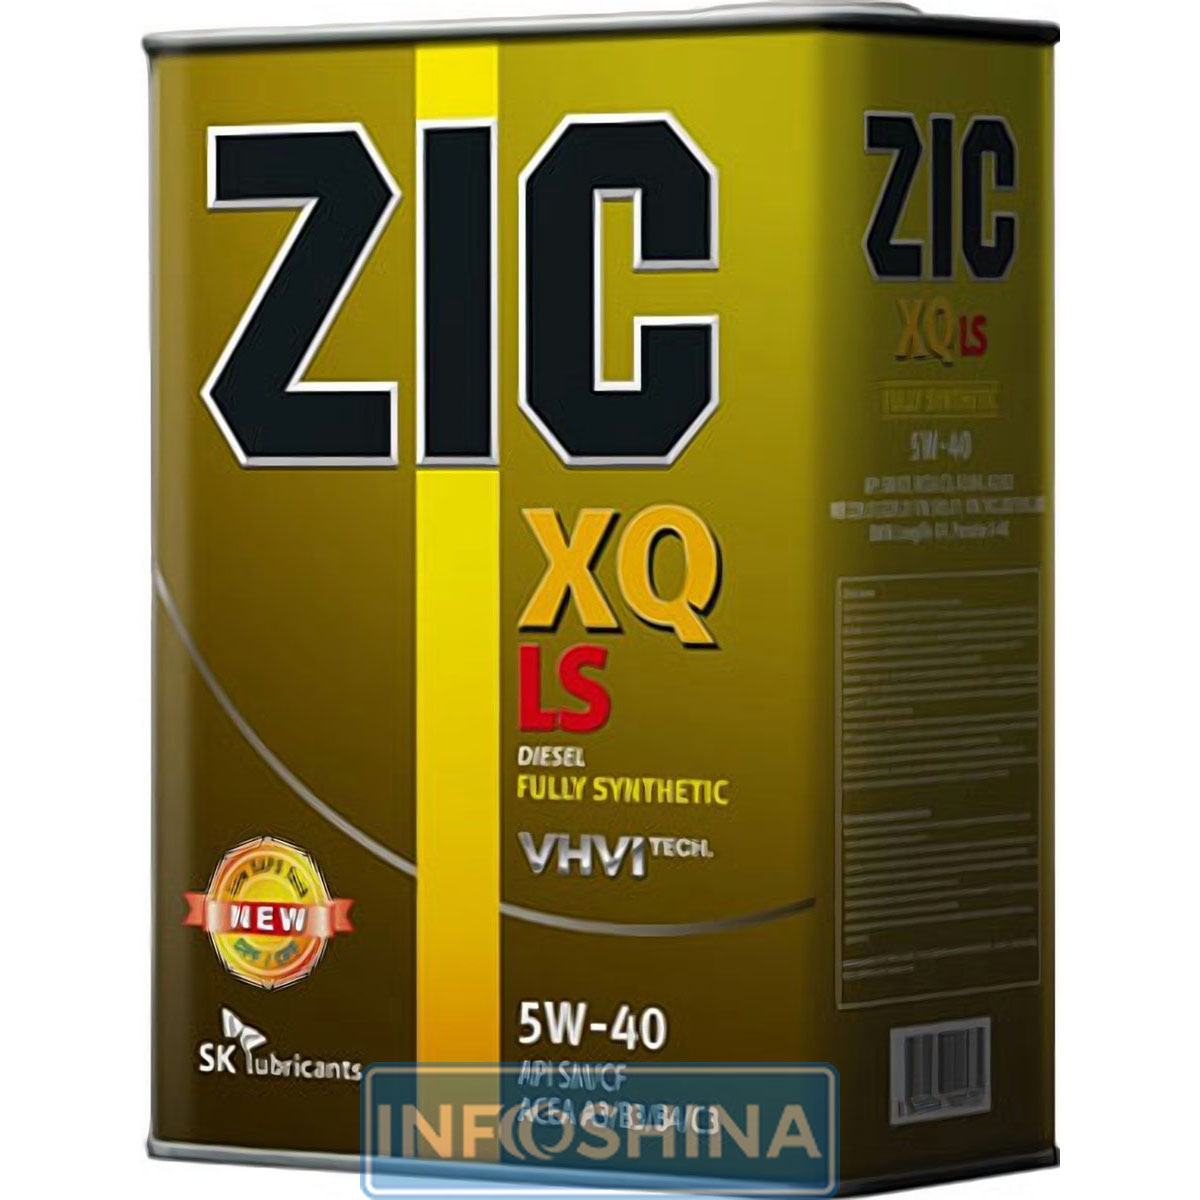 Zic XQ LS 5W-40